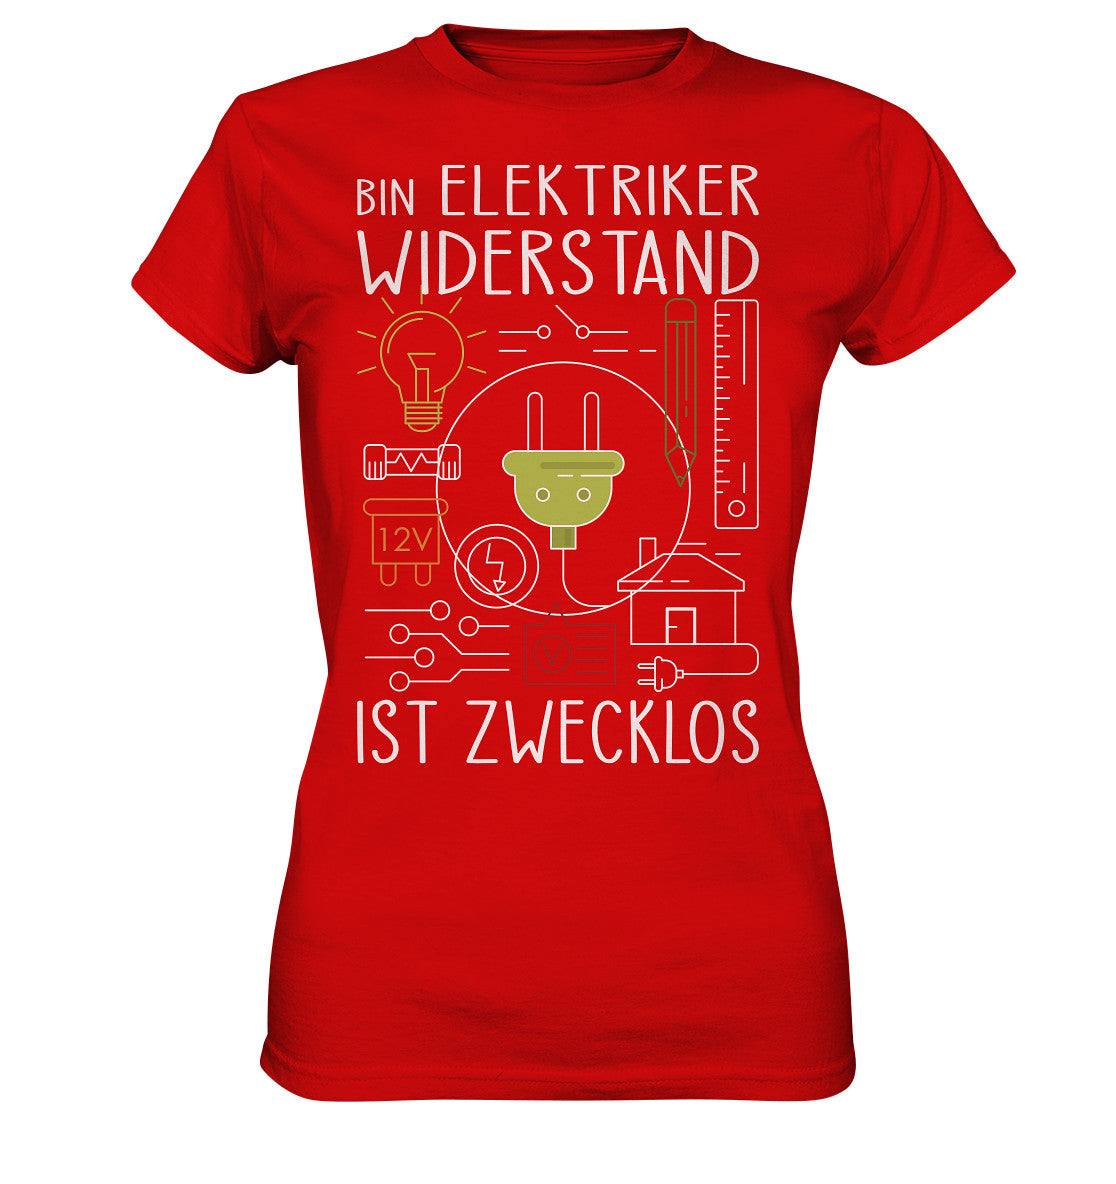 Bin Elektriker, Widerstand zwecklos - Ladies Premium Shirt